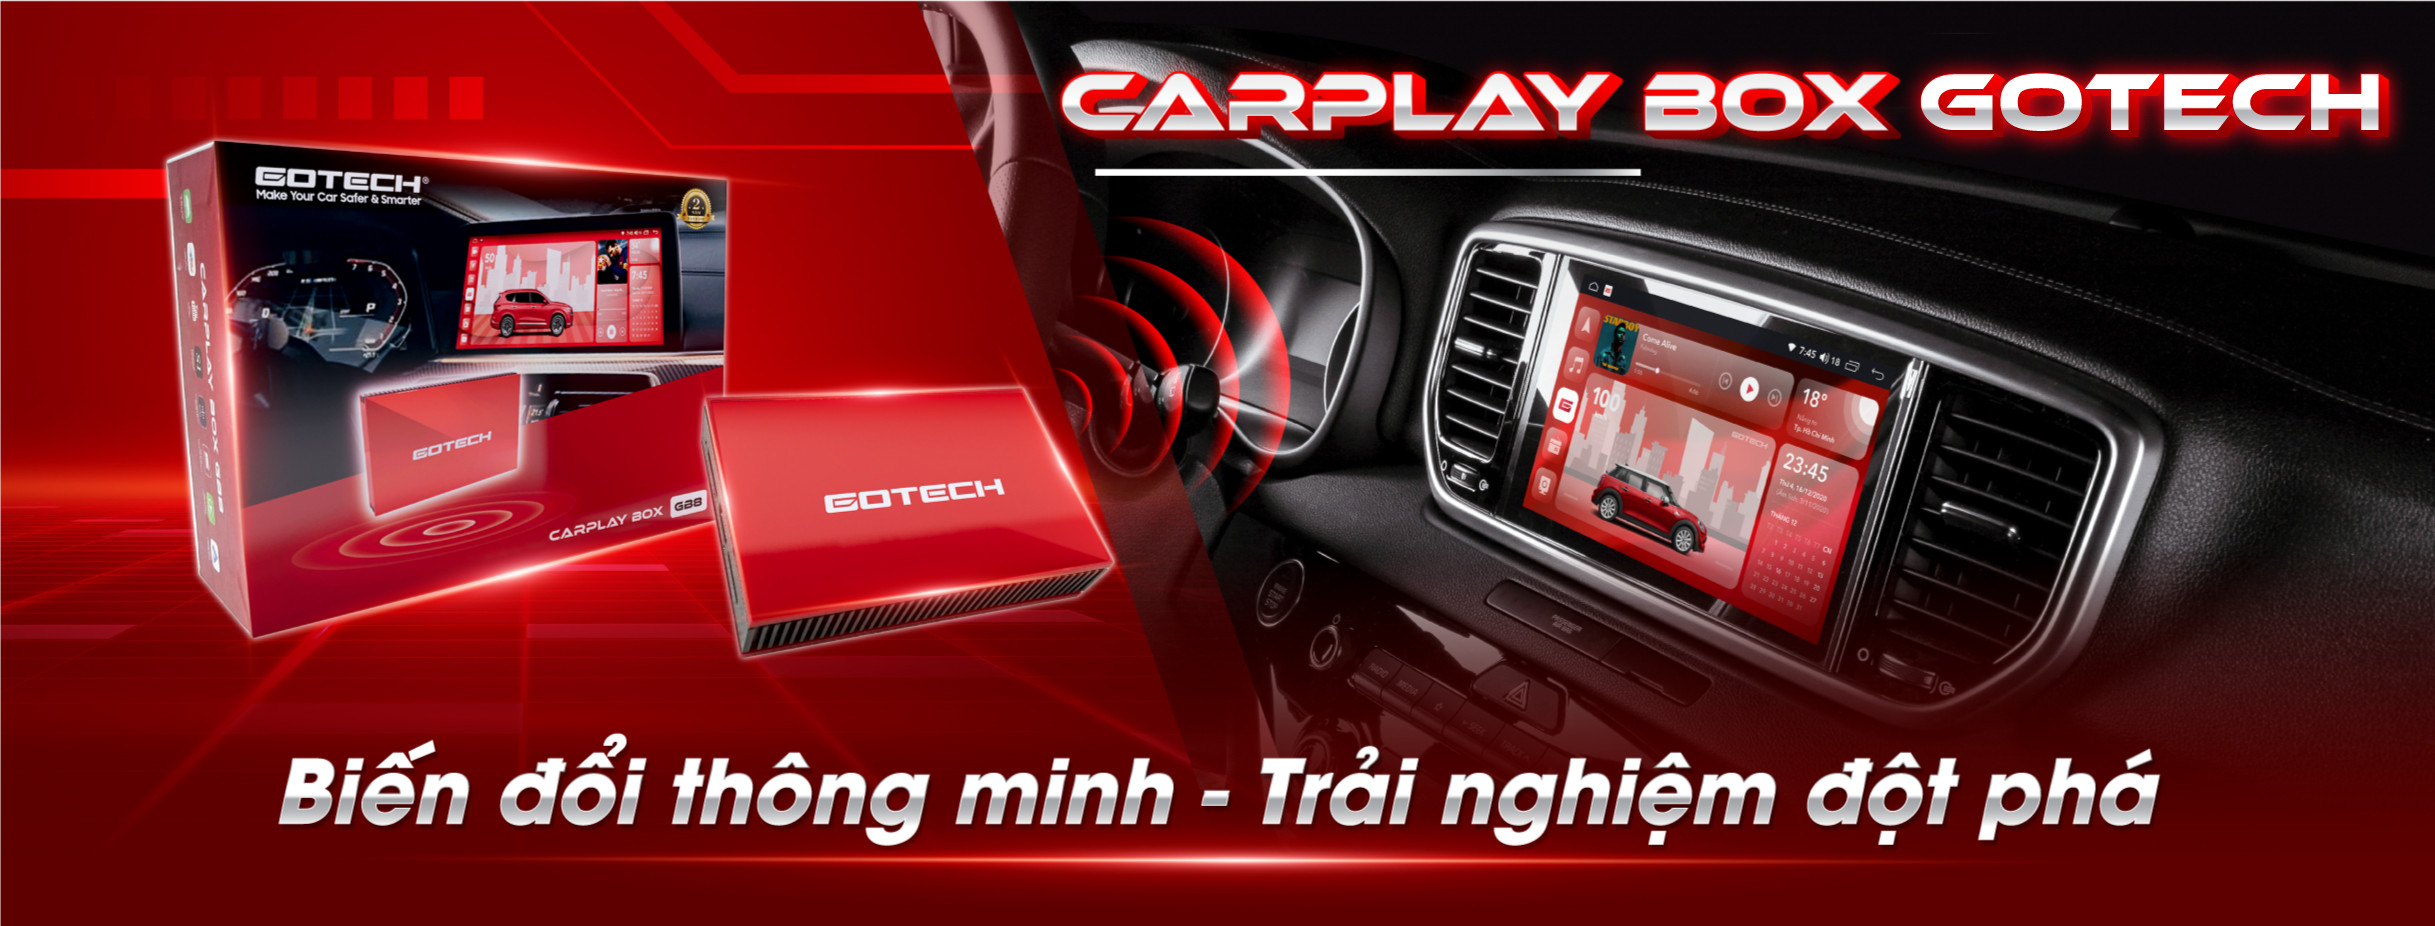 CarPlay Box